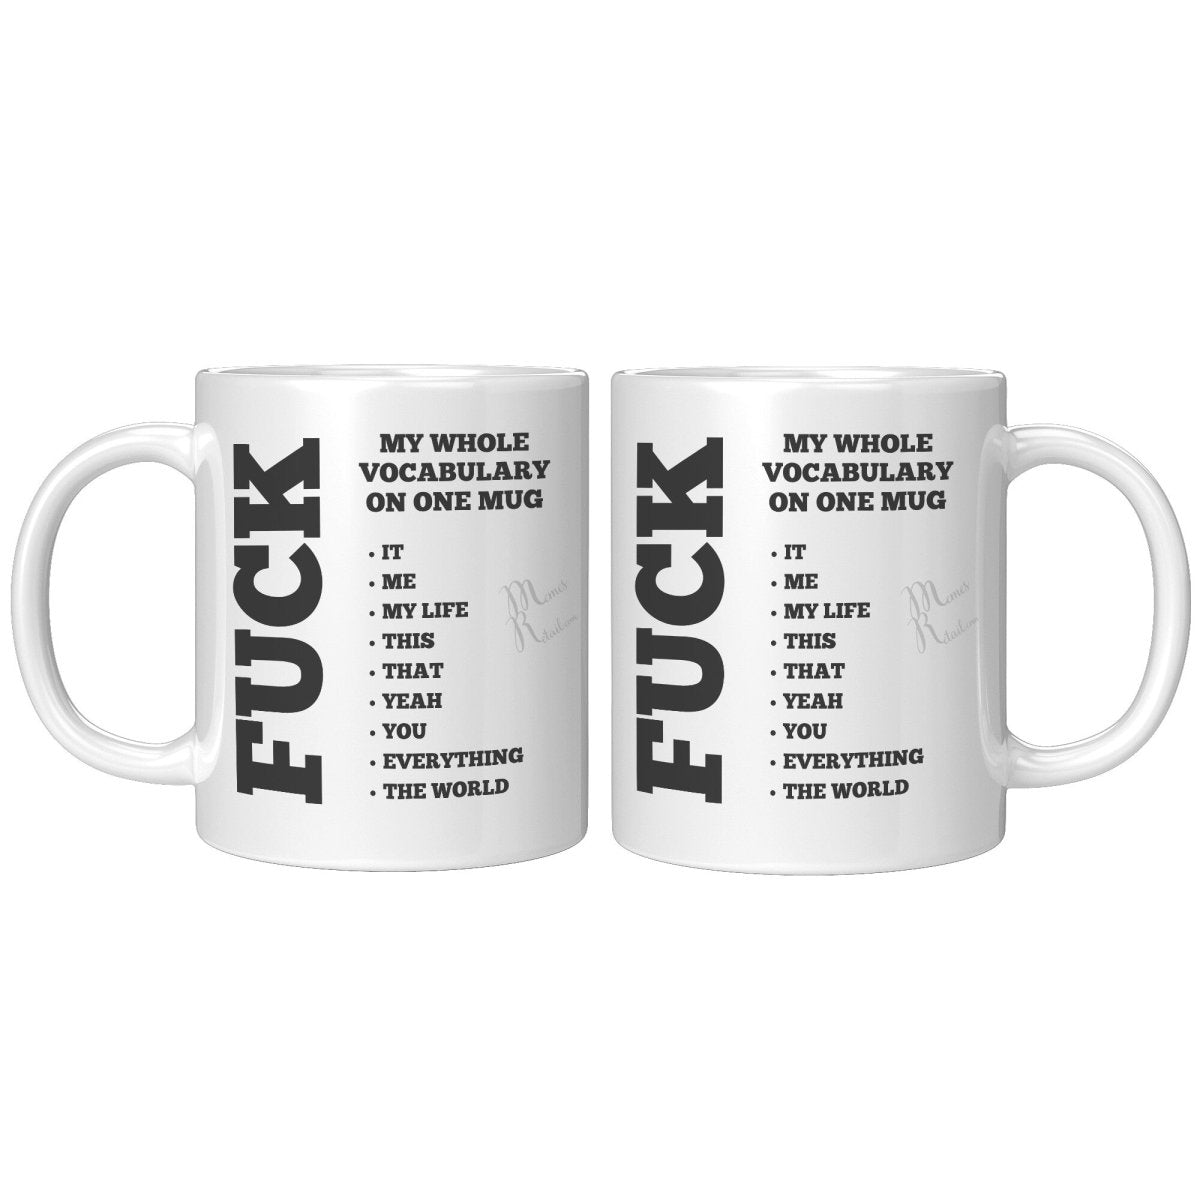 My whole vocabulary on one mug, 11oz Accent Mug / White - MemesRetail.com